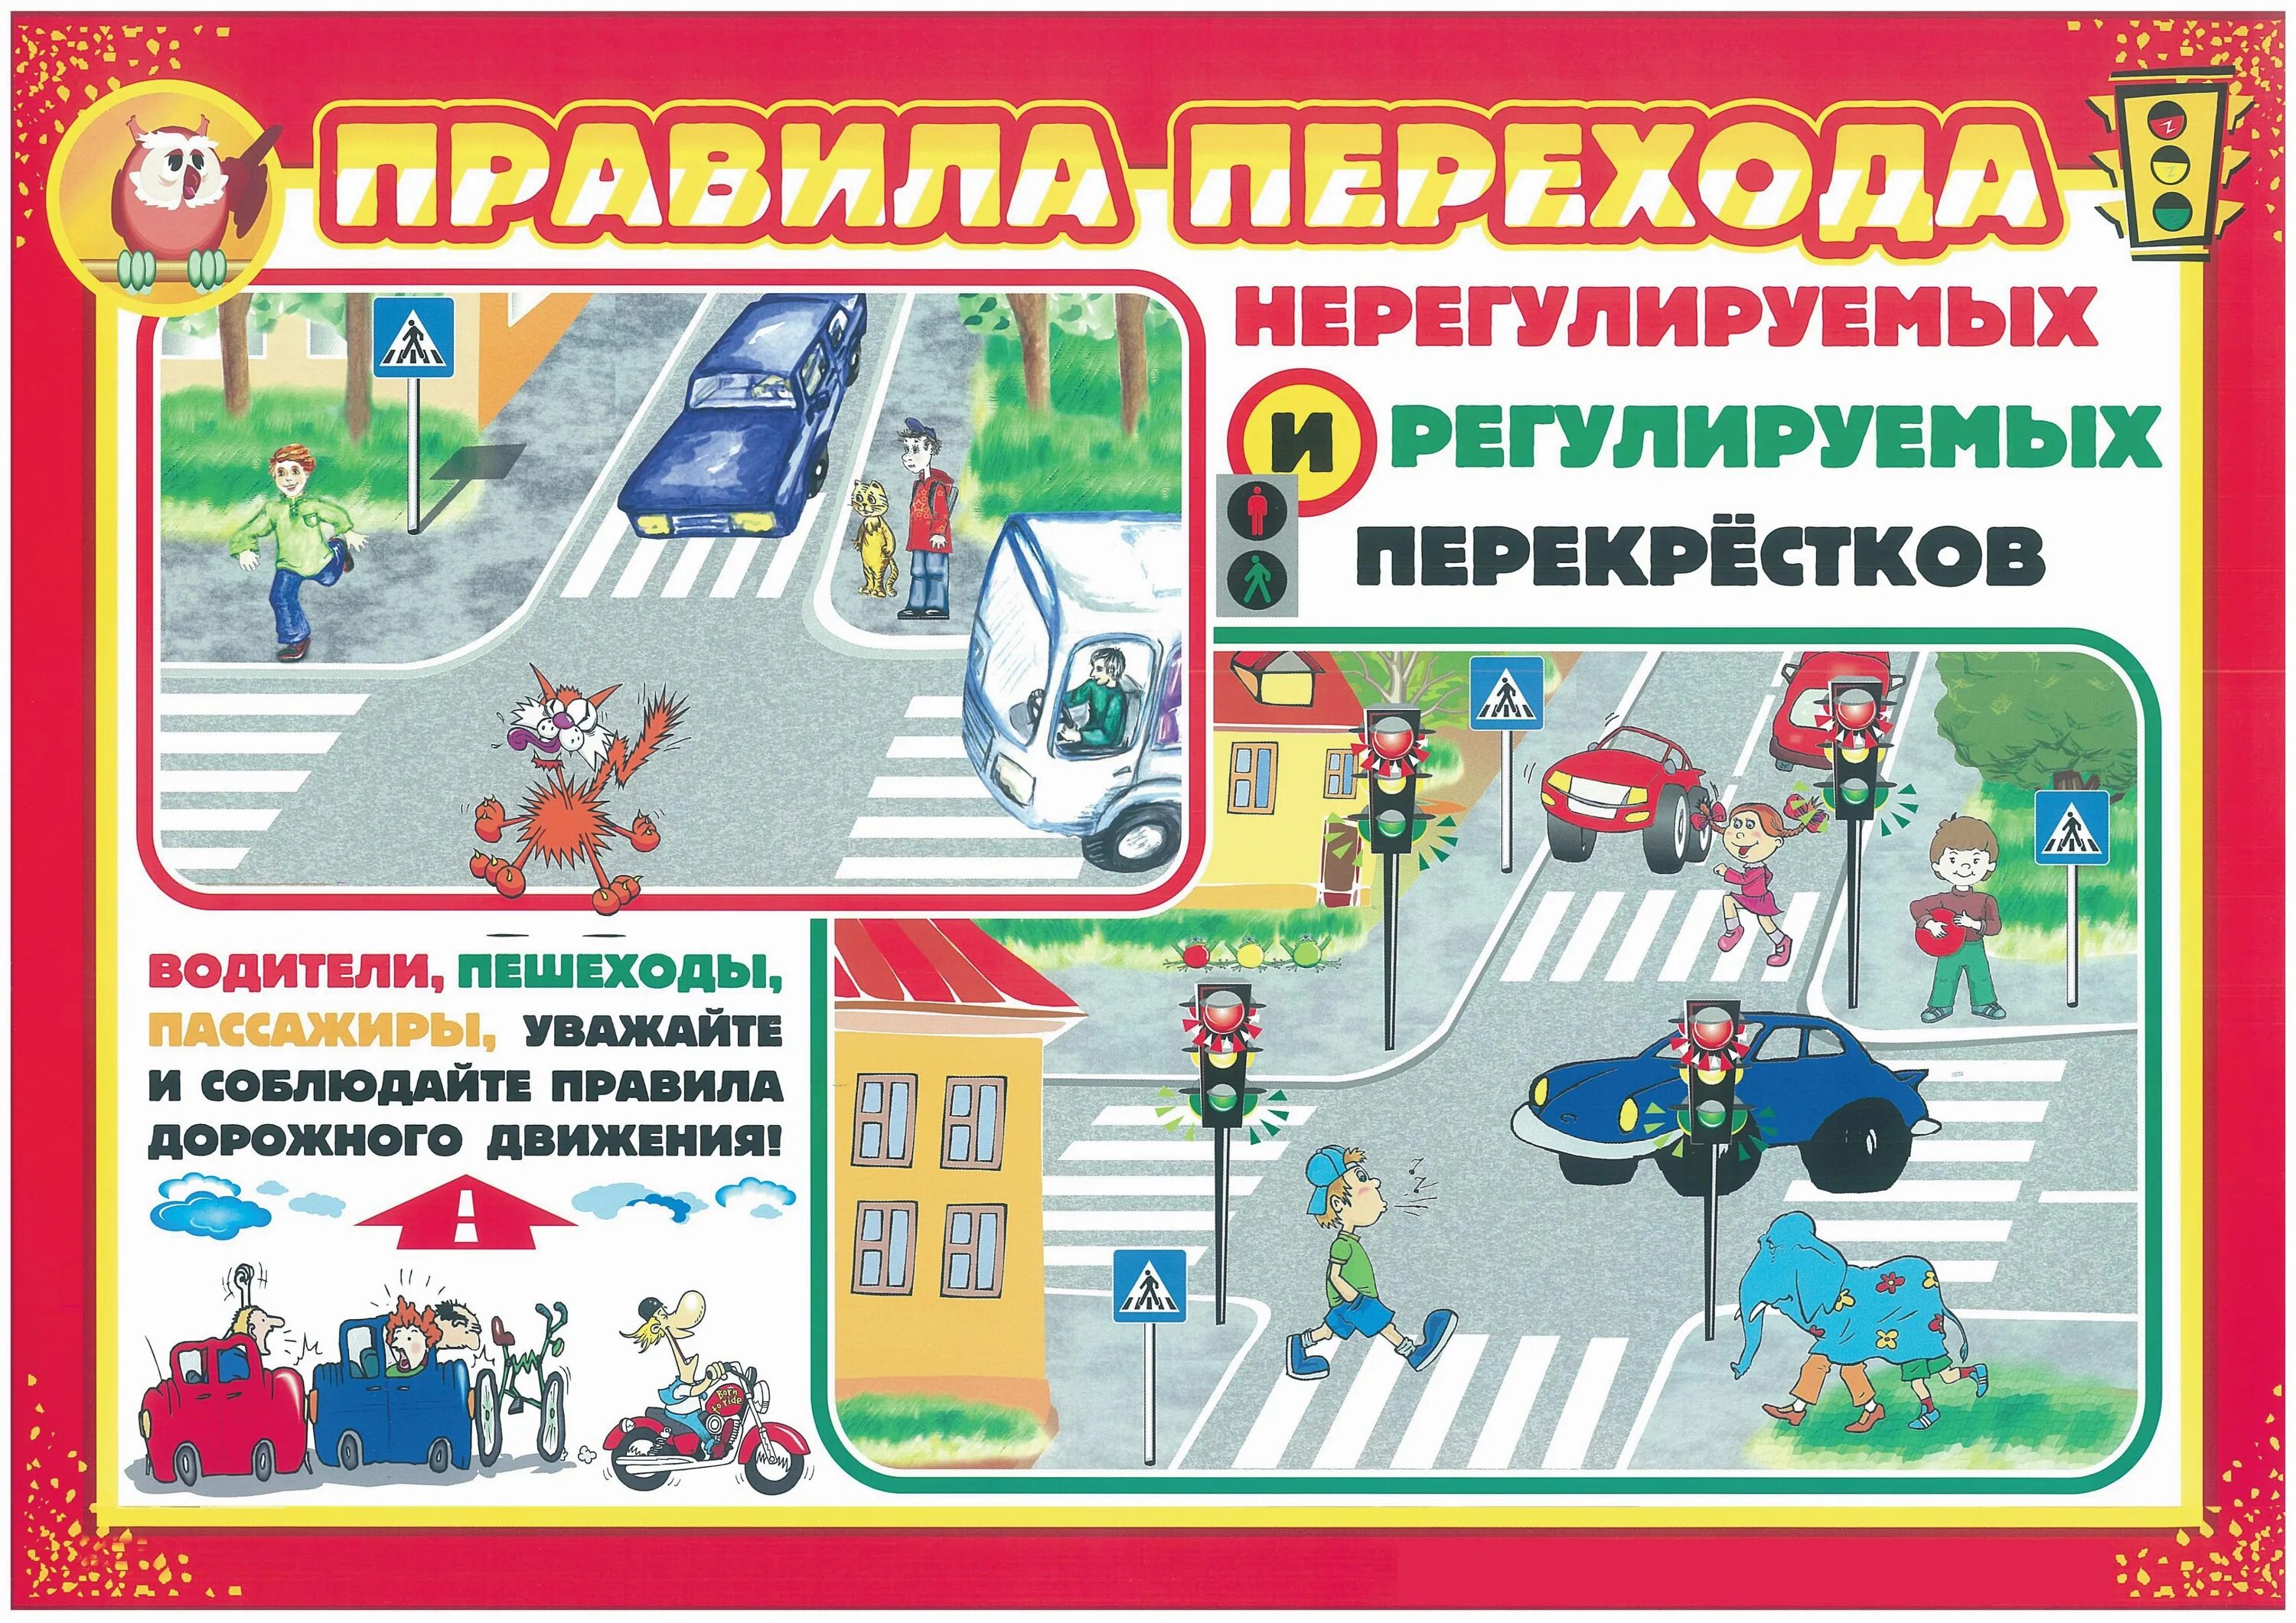 Бдд детям. Правила дорожного движения. Правила дорожного движения для детей. Безопасность на дороге для дошкольников. Плакат по правилам дорожного движения.